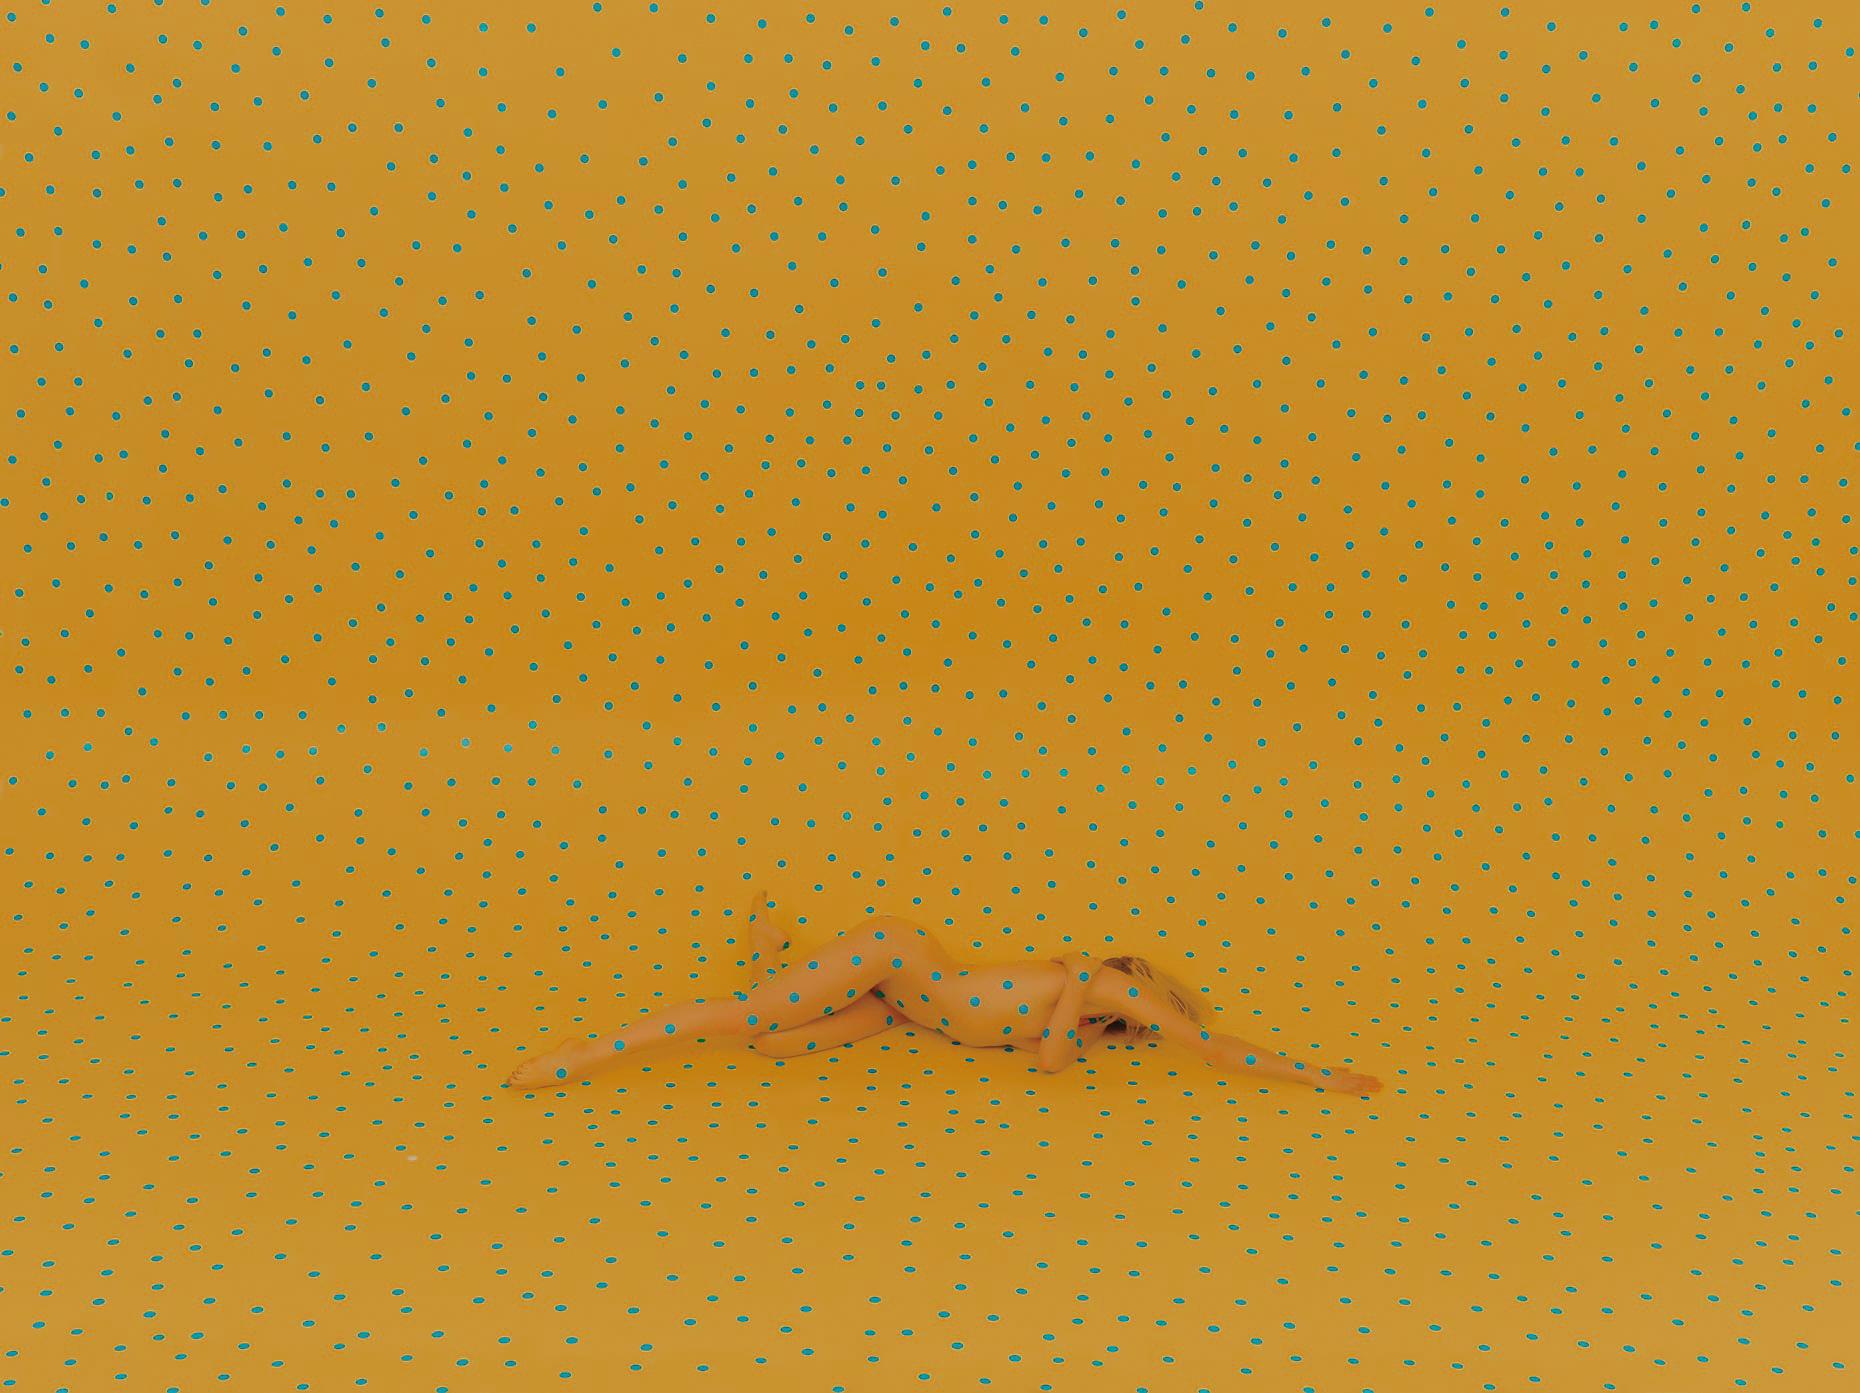 Dan Busta klebte kreisförmige Aufkleber auf das Modell und den gelben Hintergrund, bevor er dieses Foto machte. 